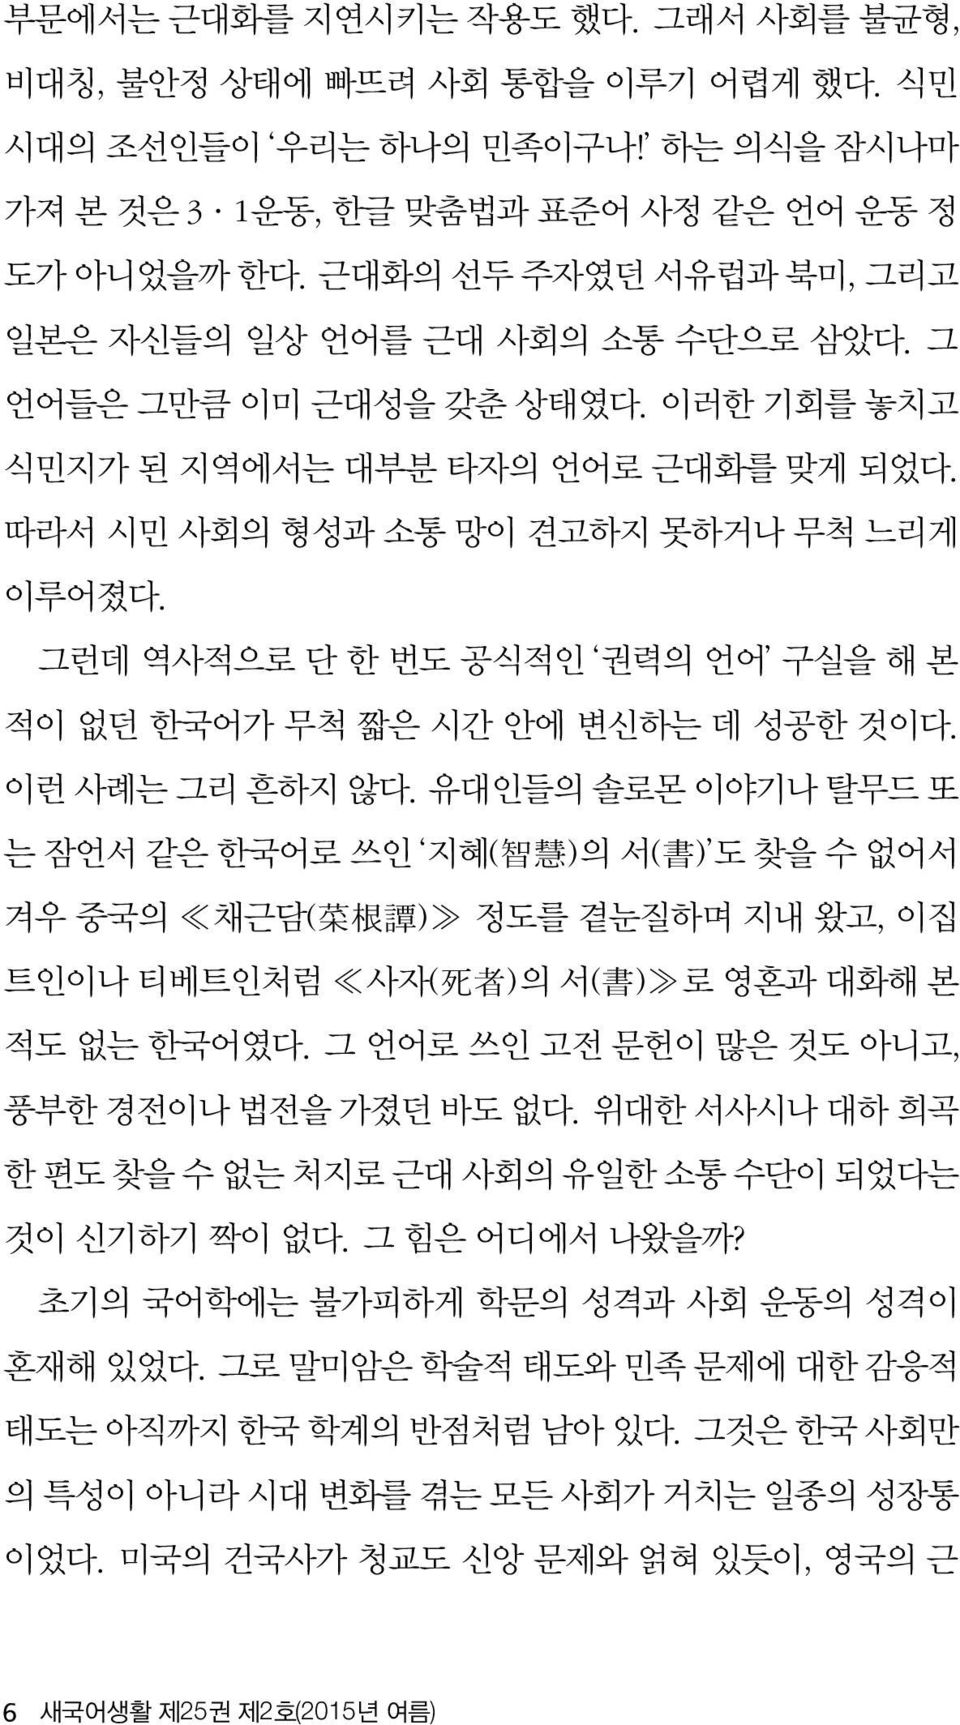 그런데 역사적으로 단 한 번도 공식적인 권력의 언어 구실을 해 본 적이 없던 한국어가 무척 짧은 시간 안에 변신하는 데 성공한 것이다. 이런 사례는 그리 흔하지 않다.